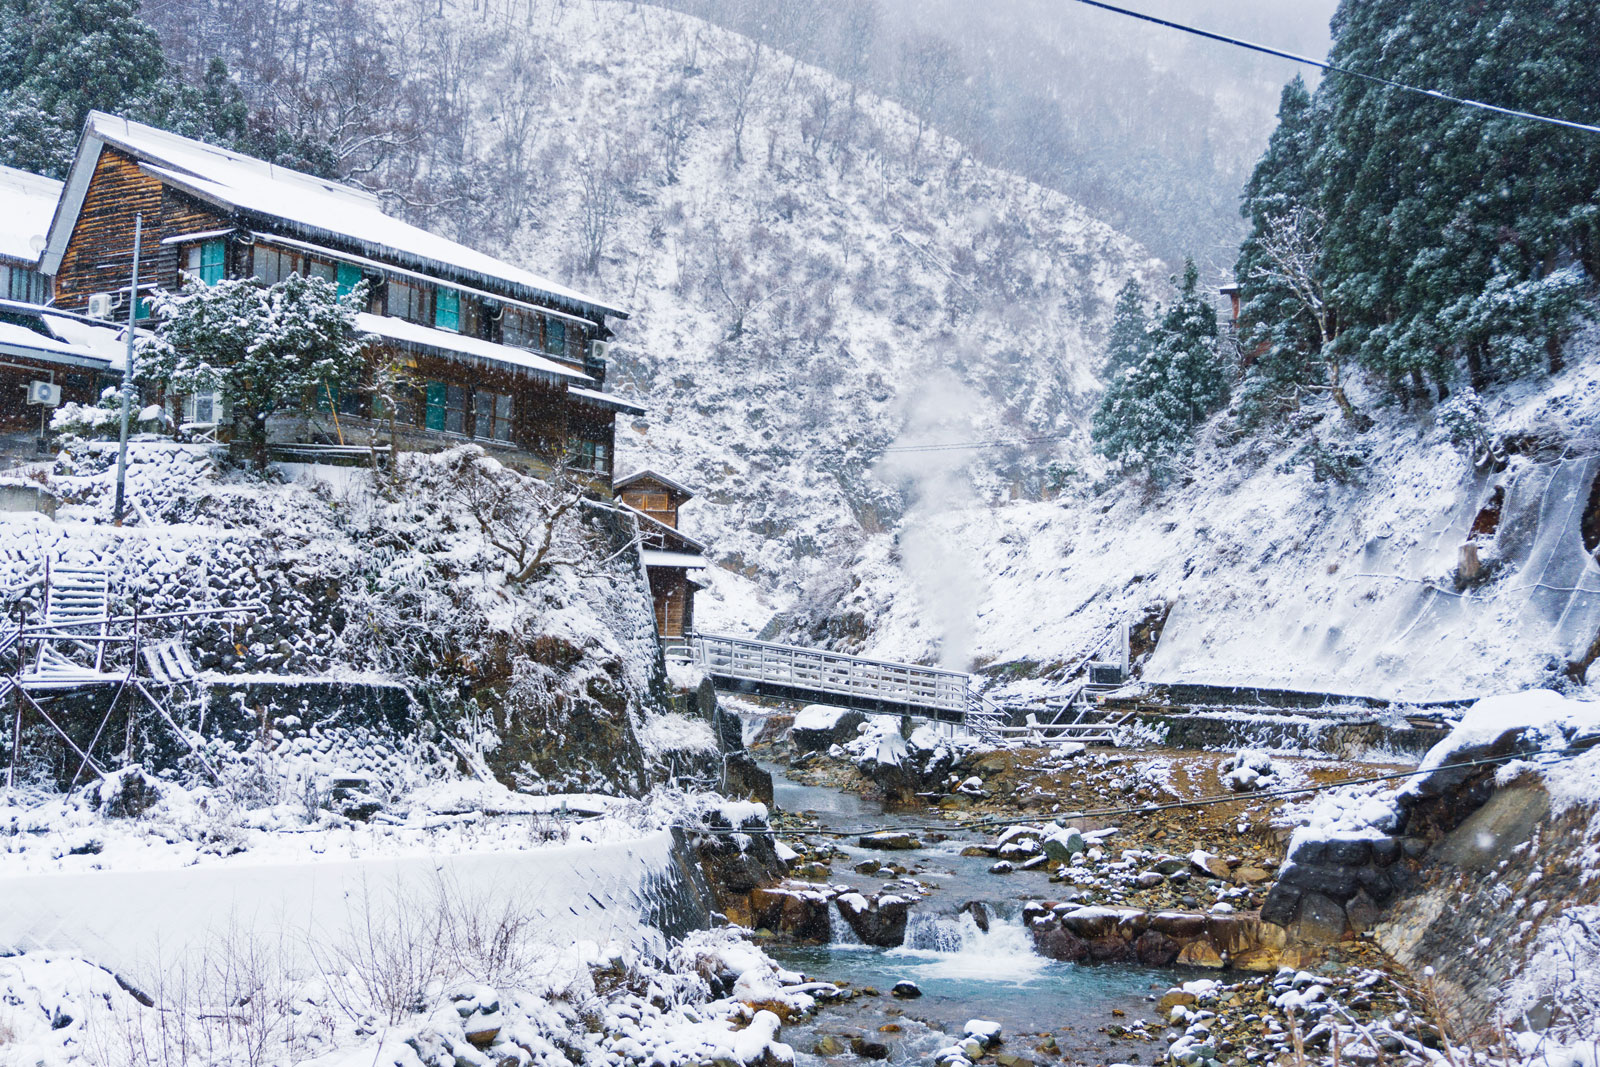 Nagano Japan snow mountains